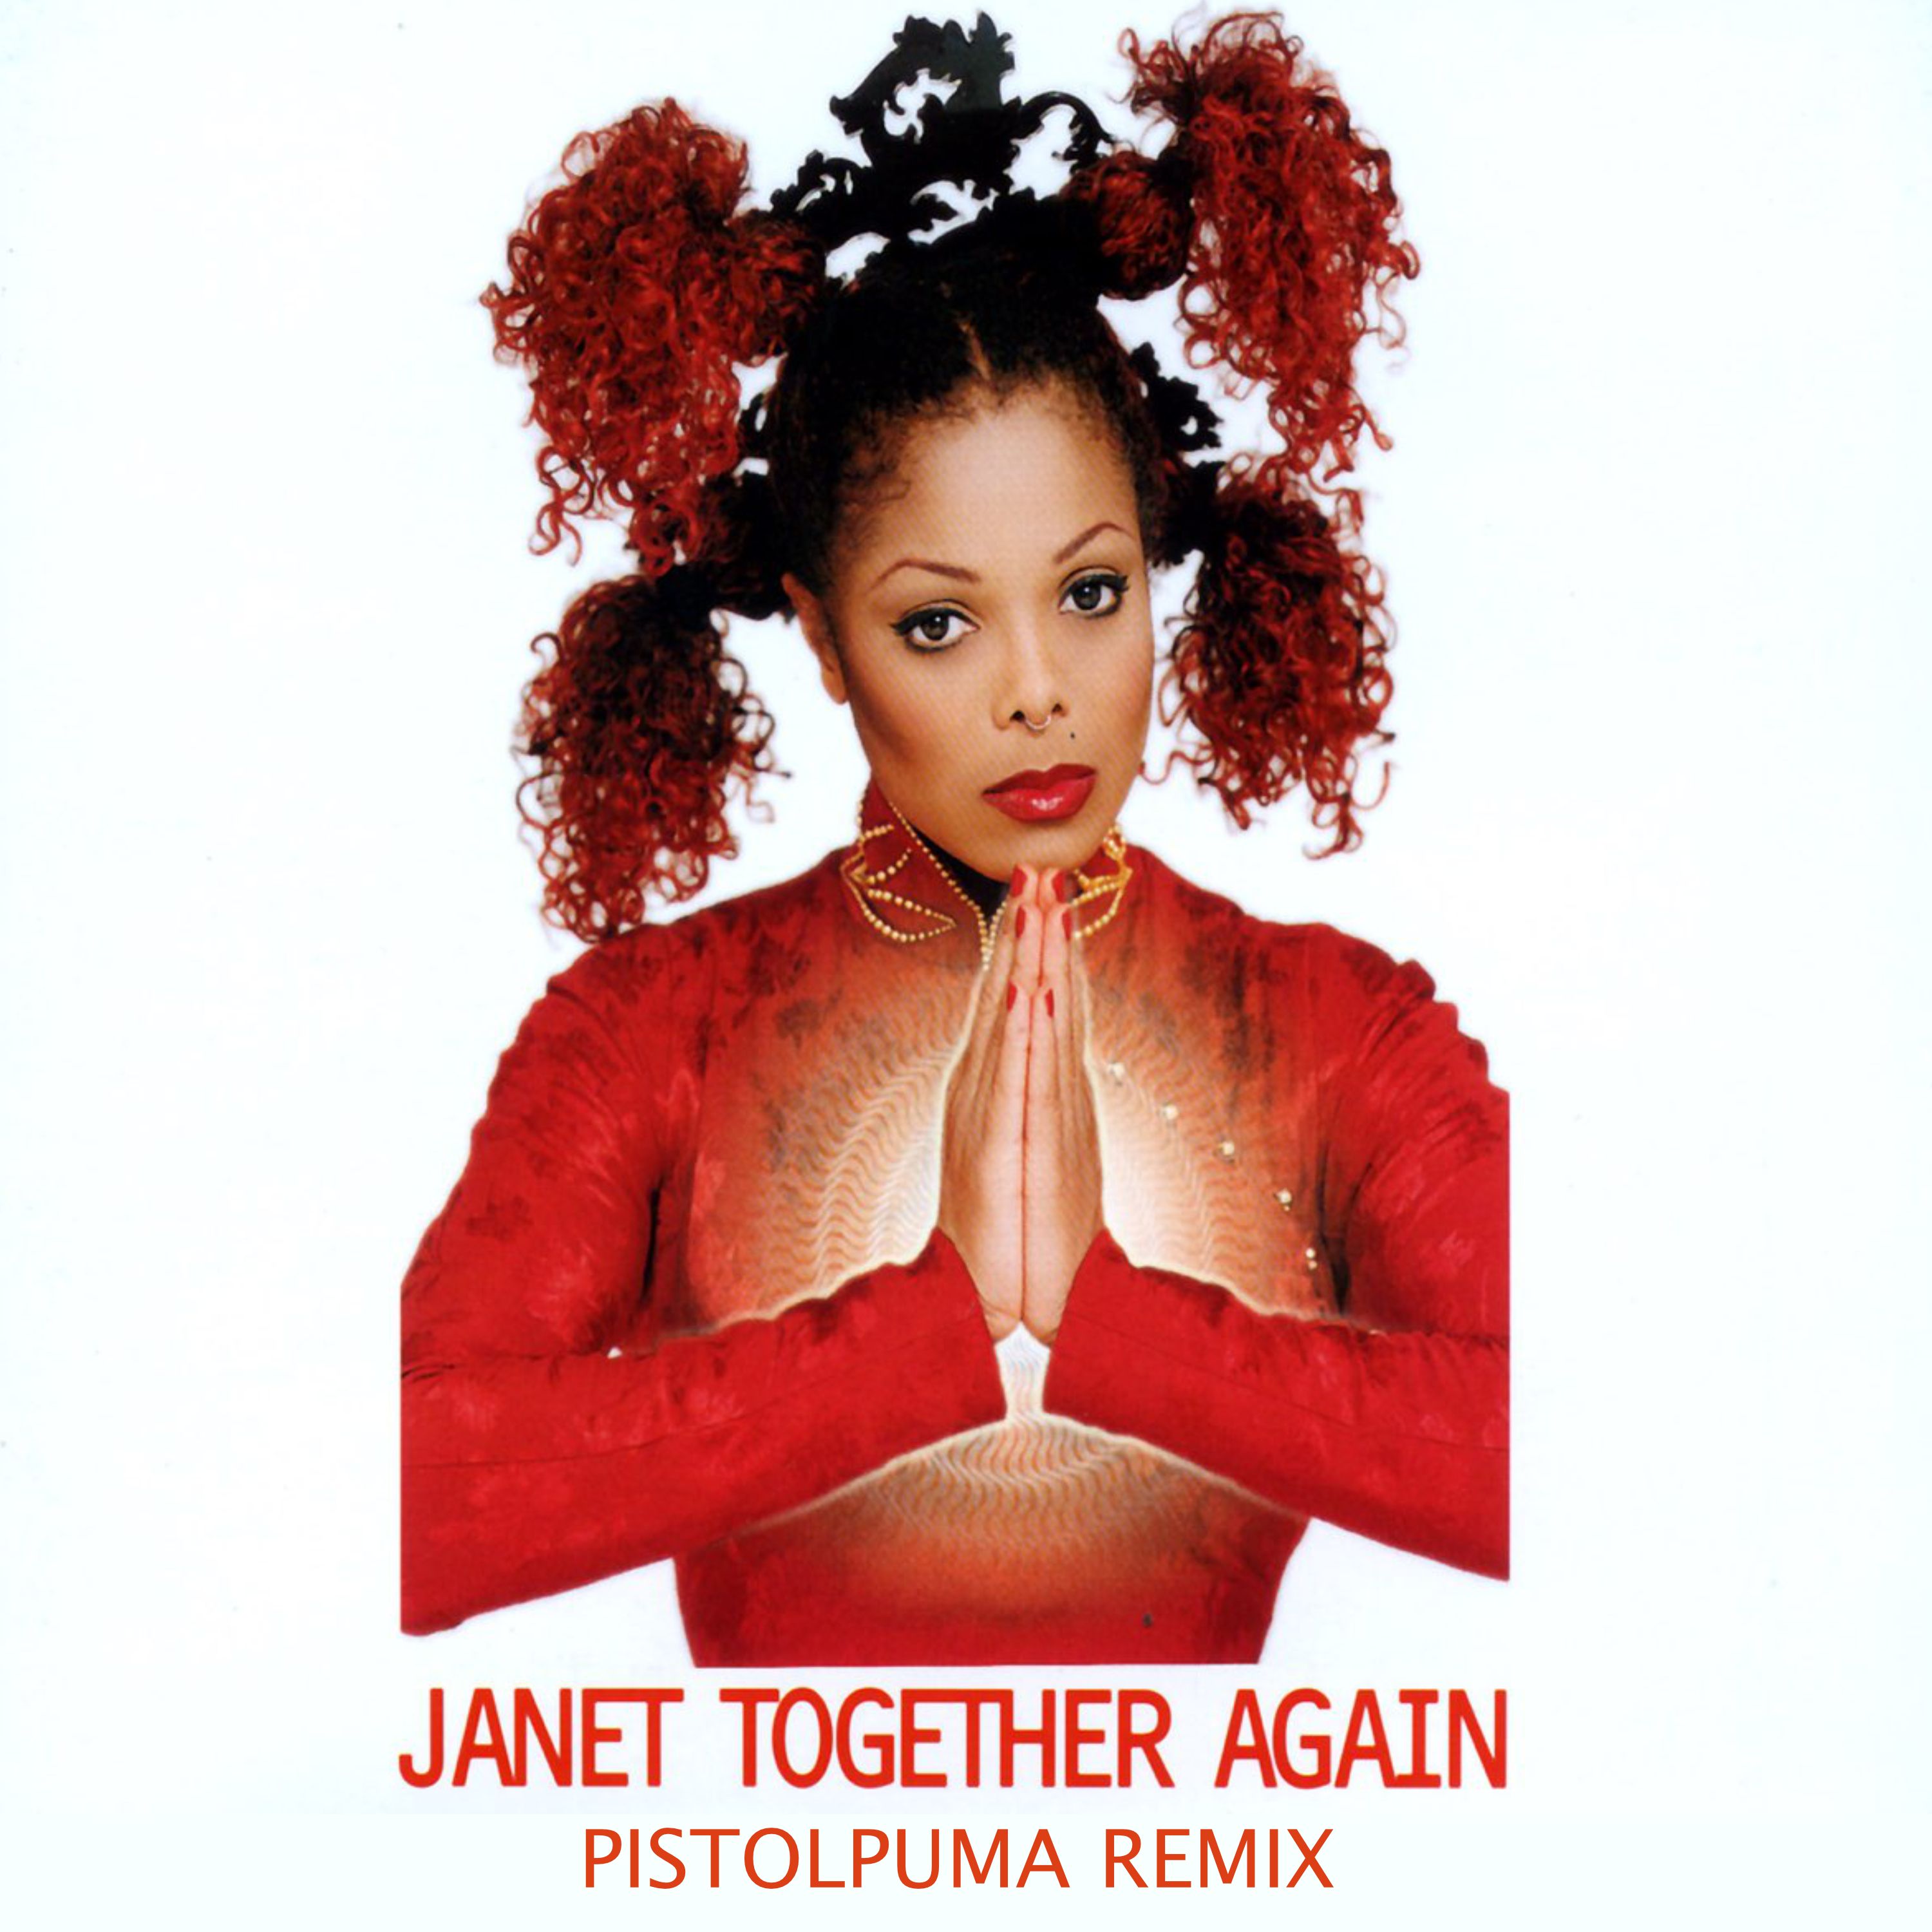 ਡਾਉਨਲੋਡ ਕਰੋ Janet - Together Again (Pistolpuma Remix)